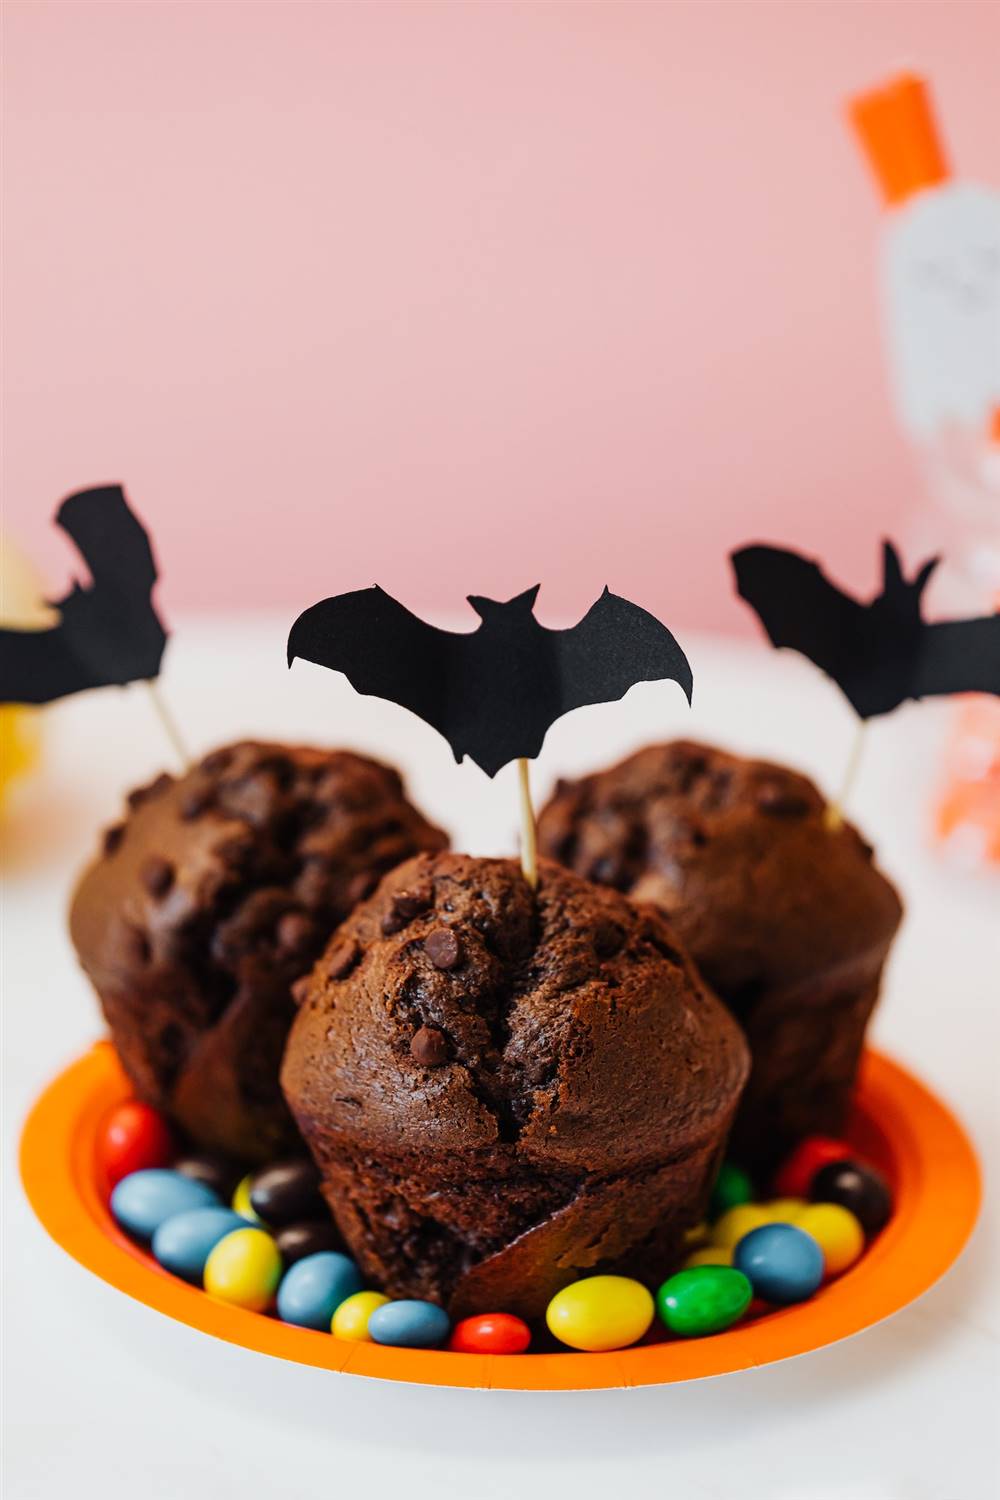 Cupcakes con murciélagos.